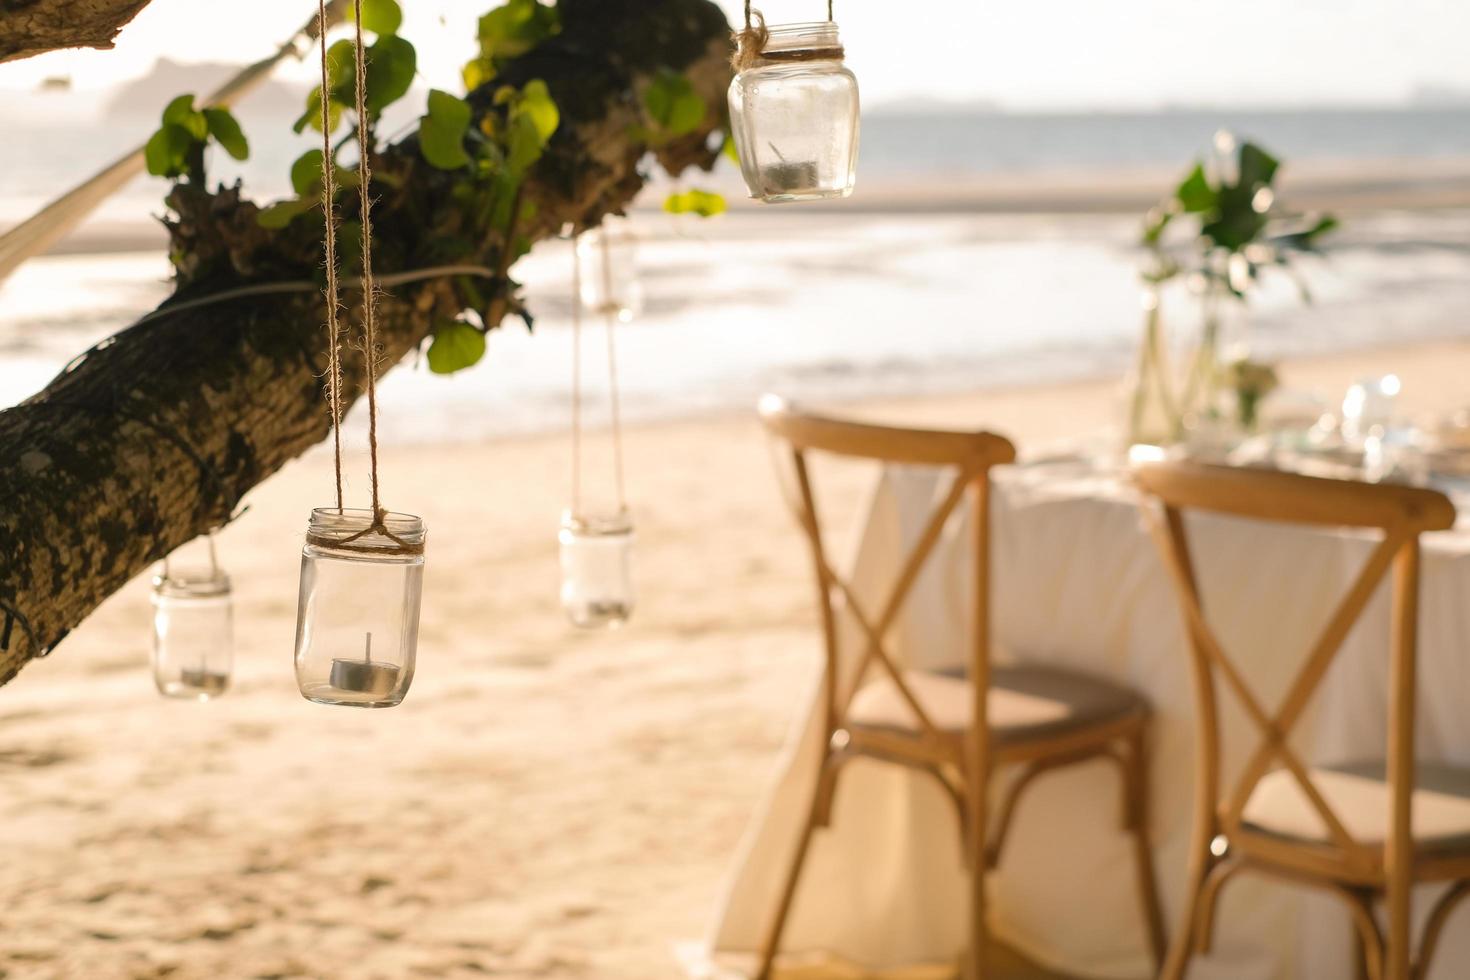 schließen sie die glaskerze, die am baum hängt, mit einem langen tisch hochzeitsessen am strand von thailand am abend. Hochzeitsfeier-Konzept. Dekoration Restaurant im Freien am Strand. foto